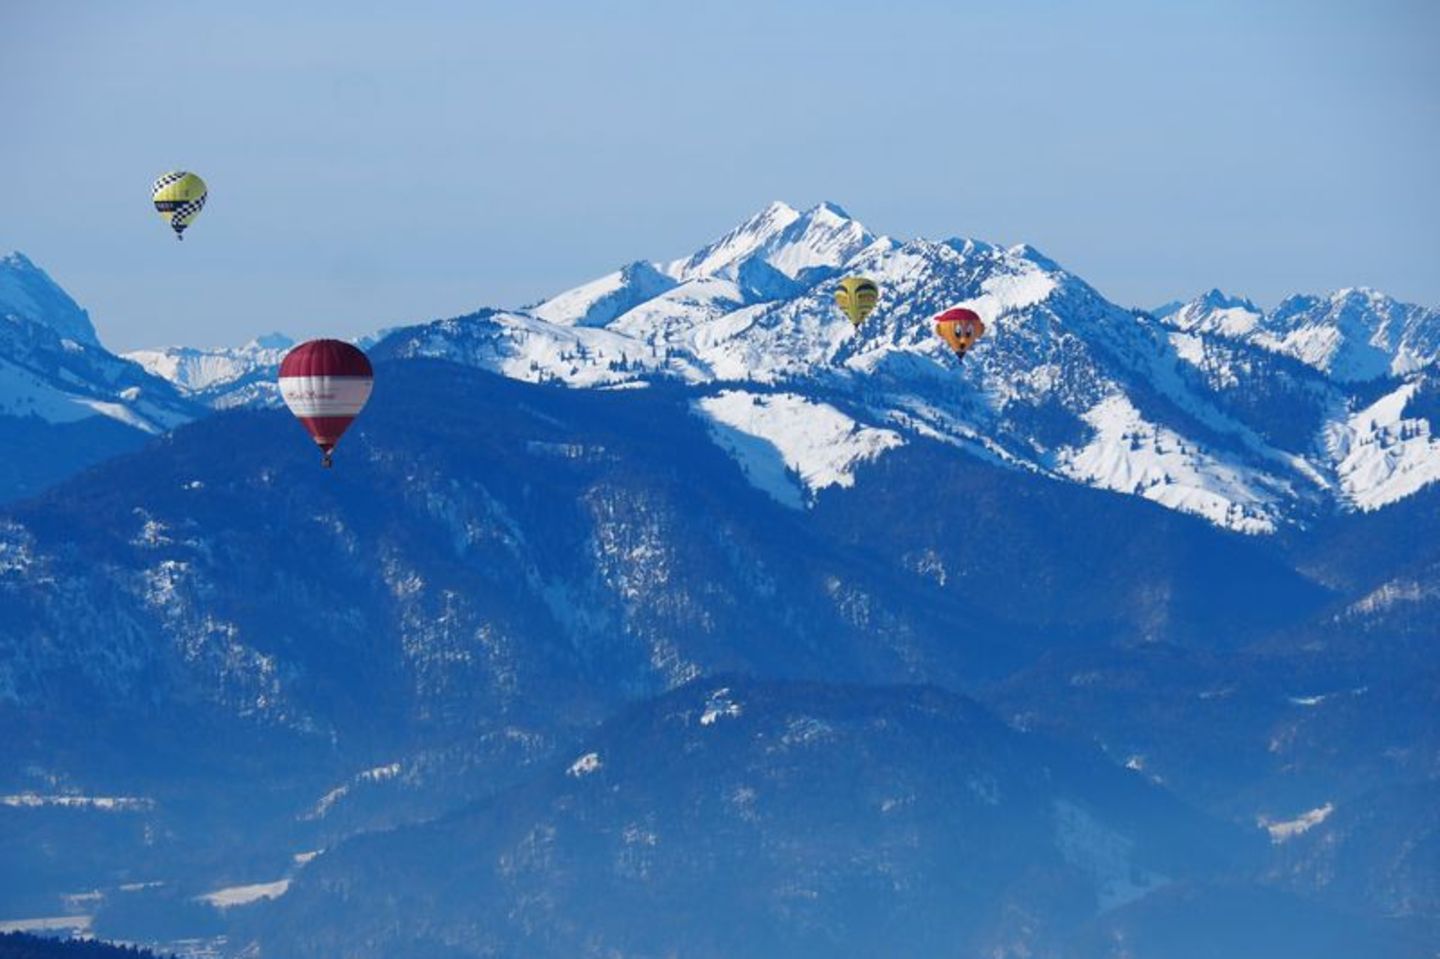 Aussicht auf die Berggipfel und andere Heißluftballons aus dem Ballonkorb.